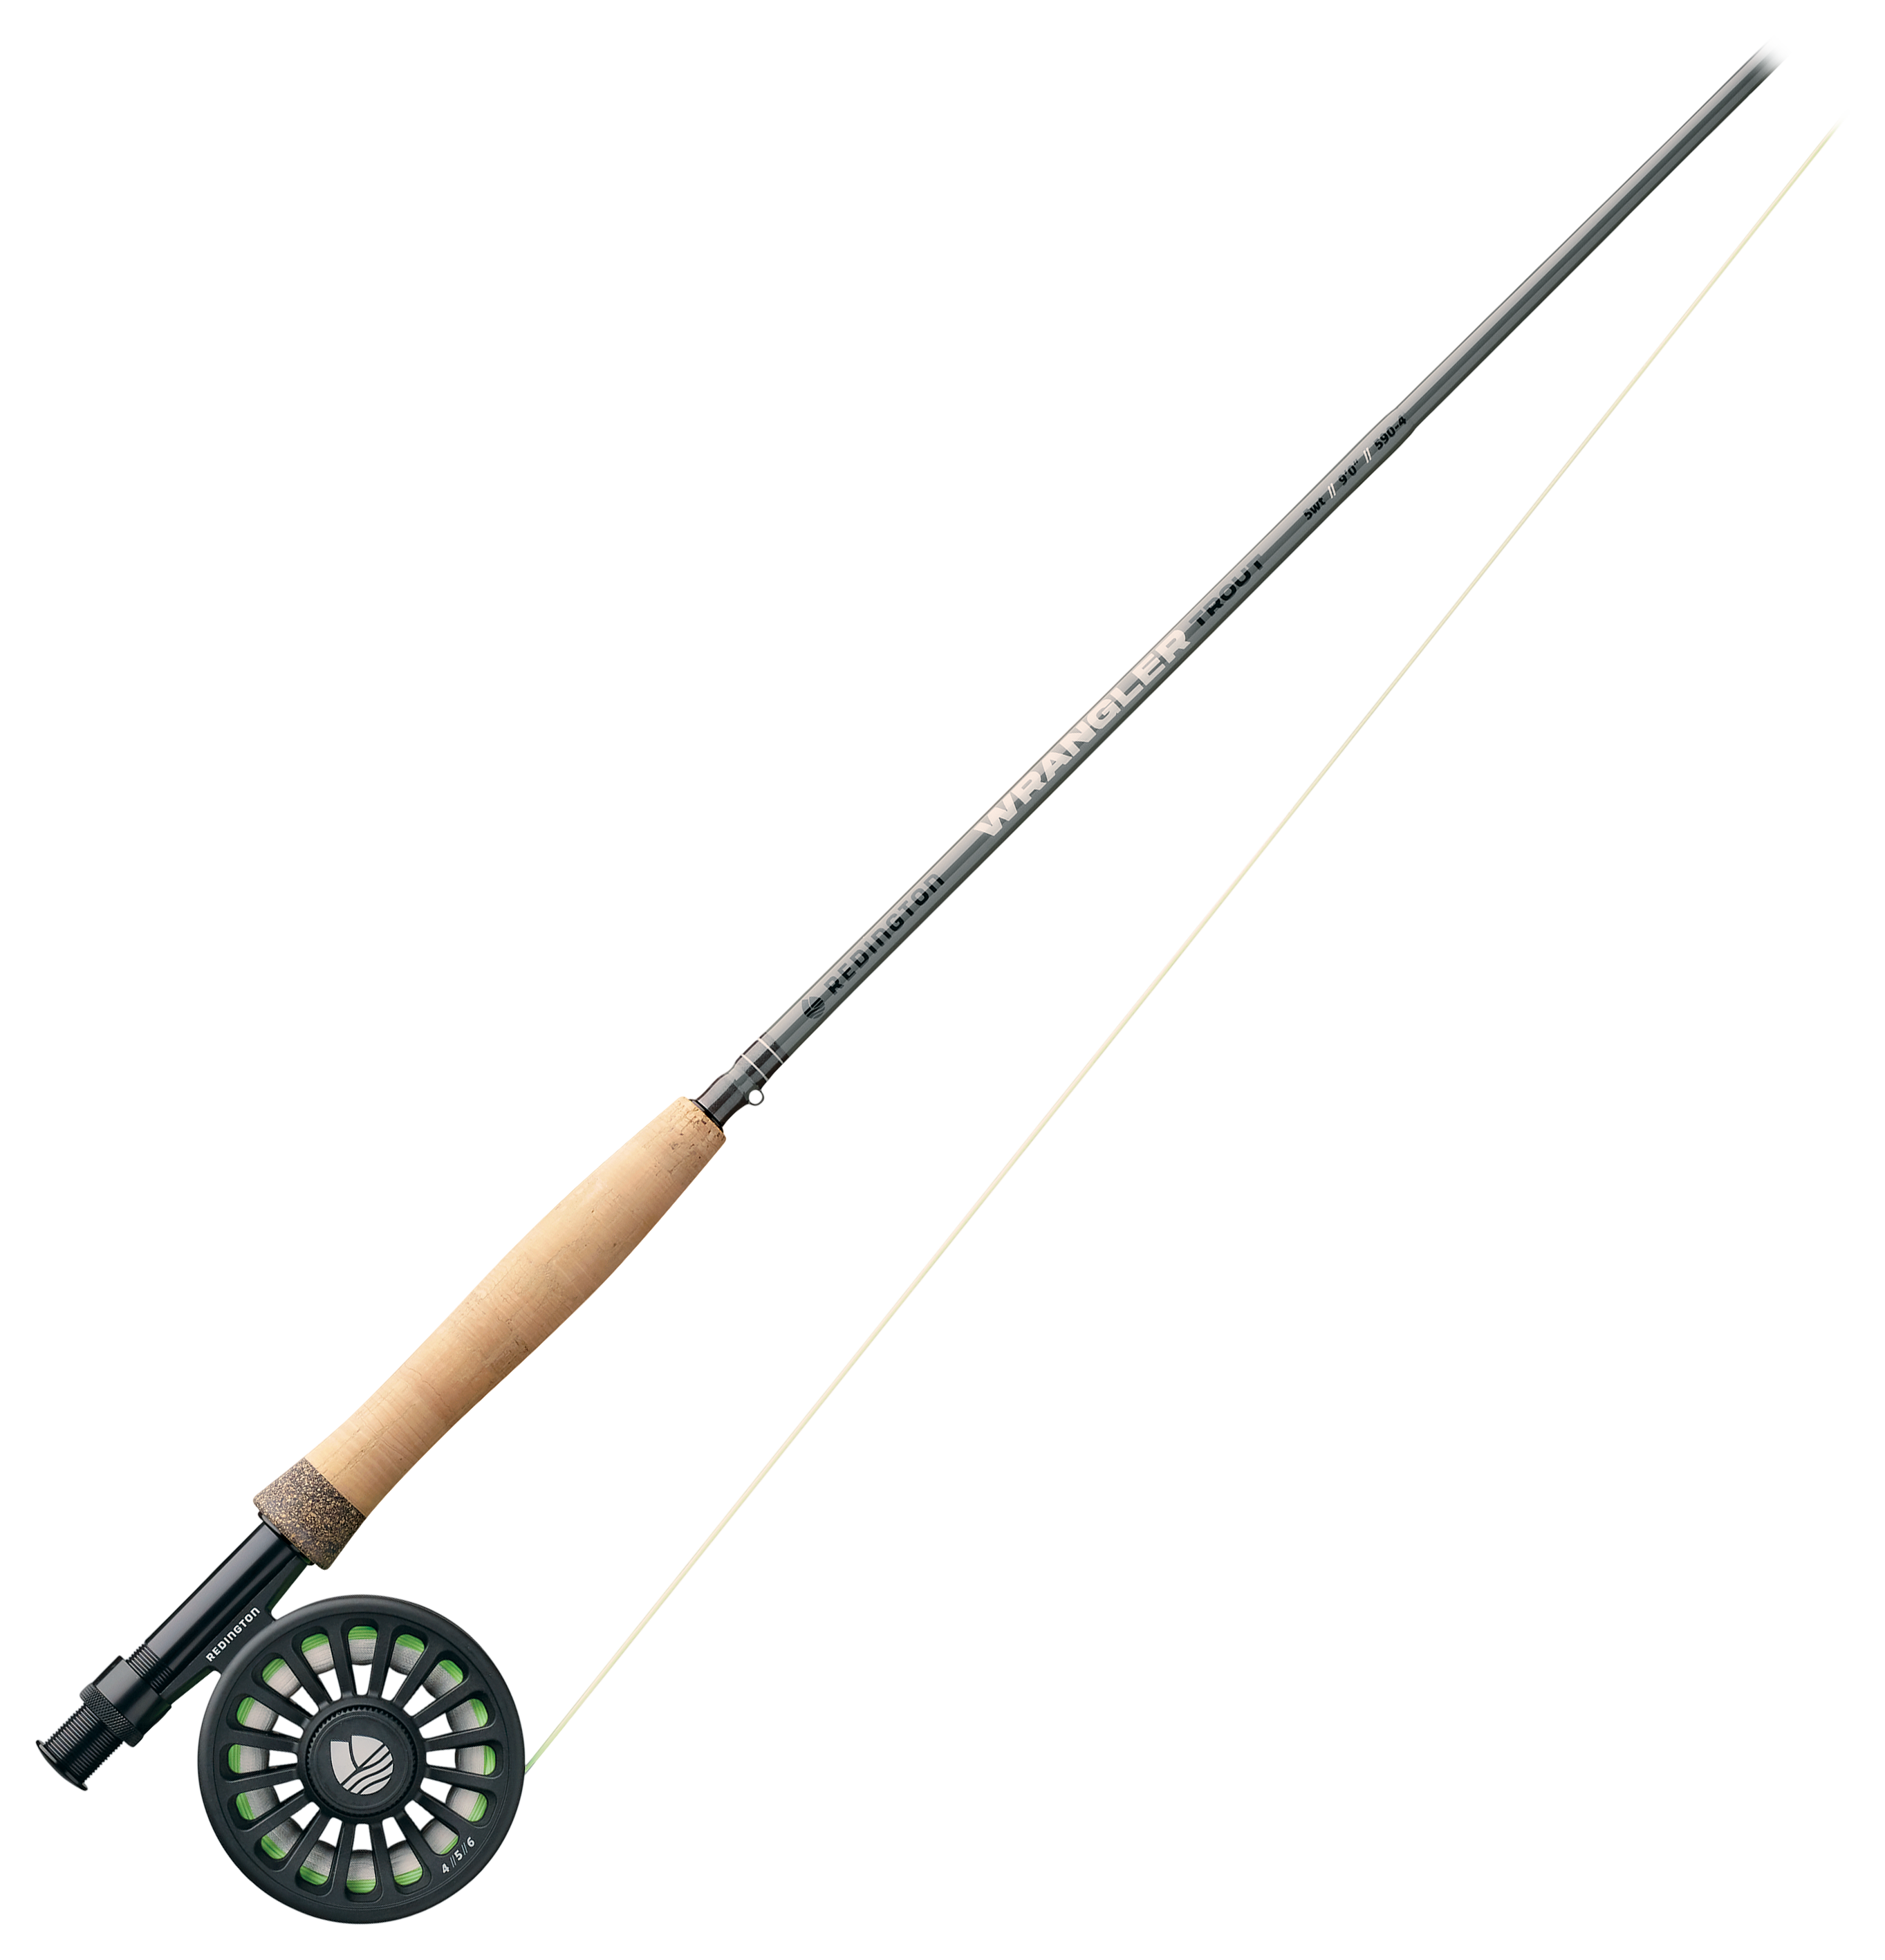  Redington Wrangler Fly Fishing Rod, 4-Piece Fly Rod, Durable  Nylon Travel Tube, 4WT 9'0 : Sports & Outdoors